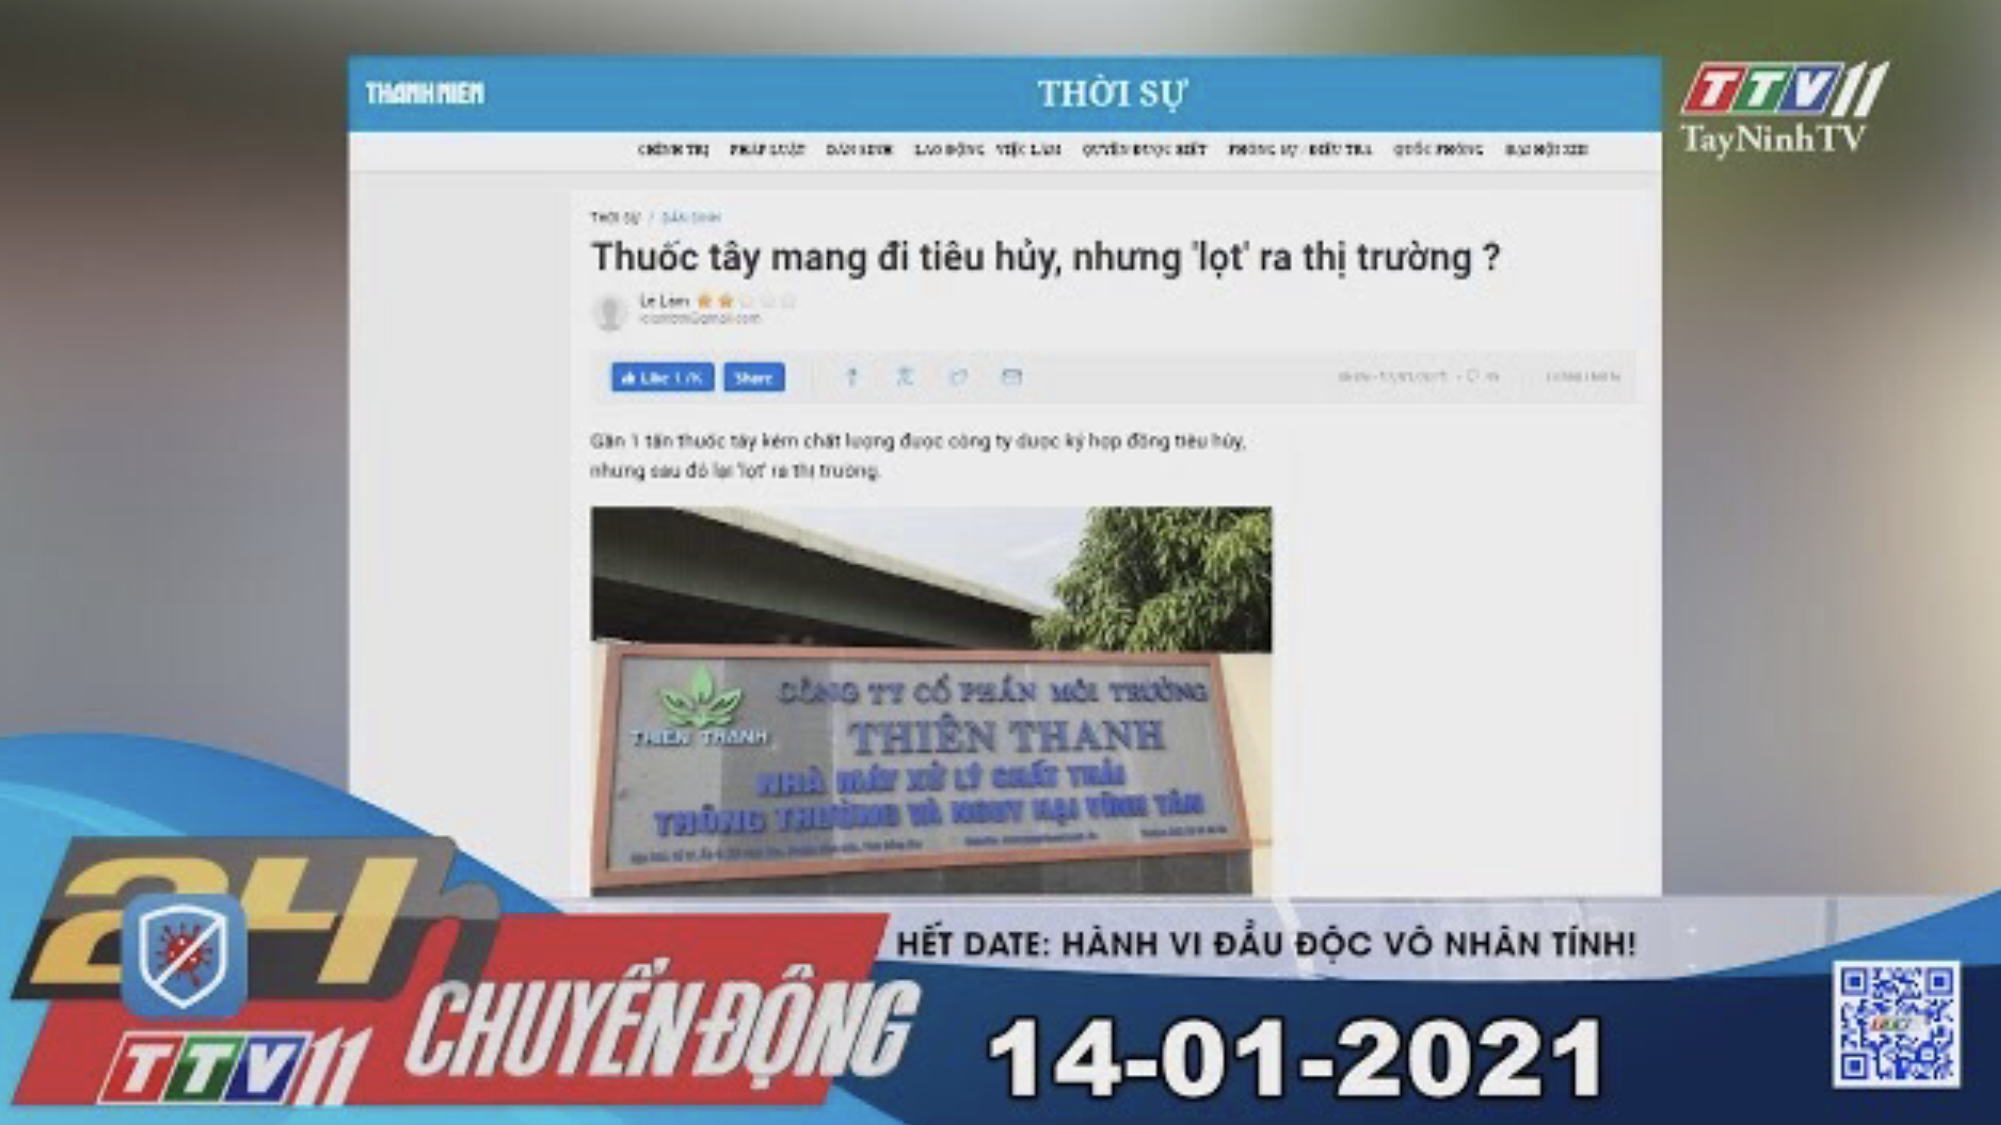 24h Chuyển động 14-01-2021 | Tin tức hôm nay | TayNinhTV